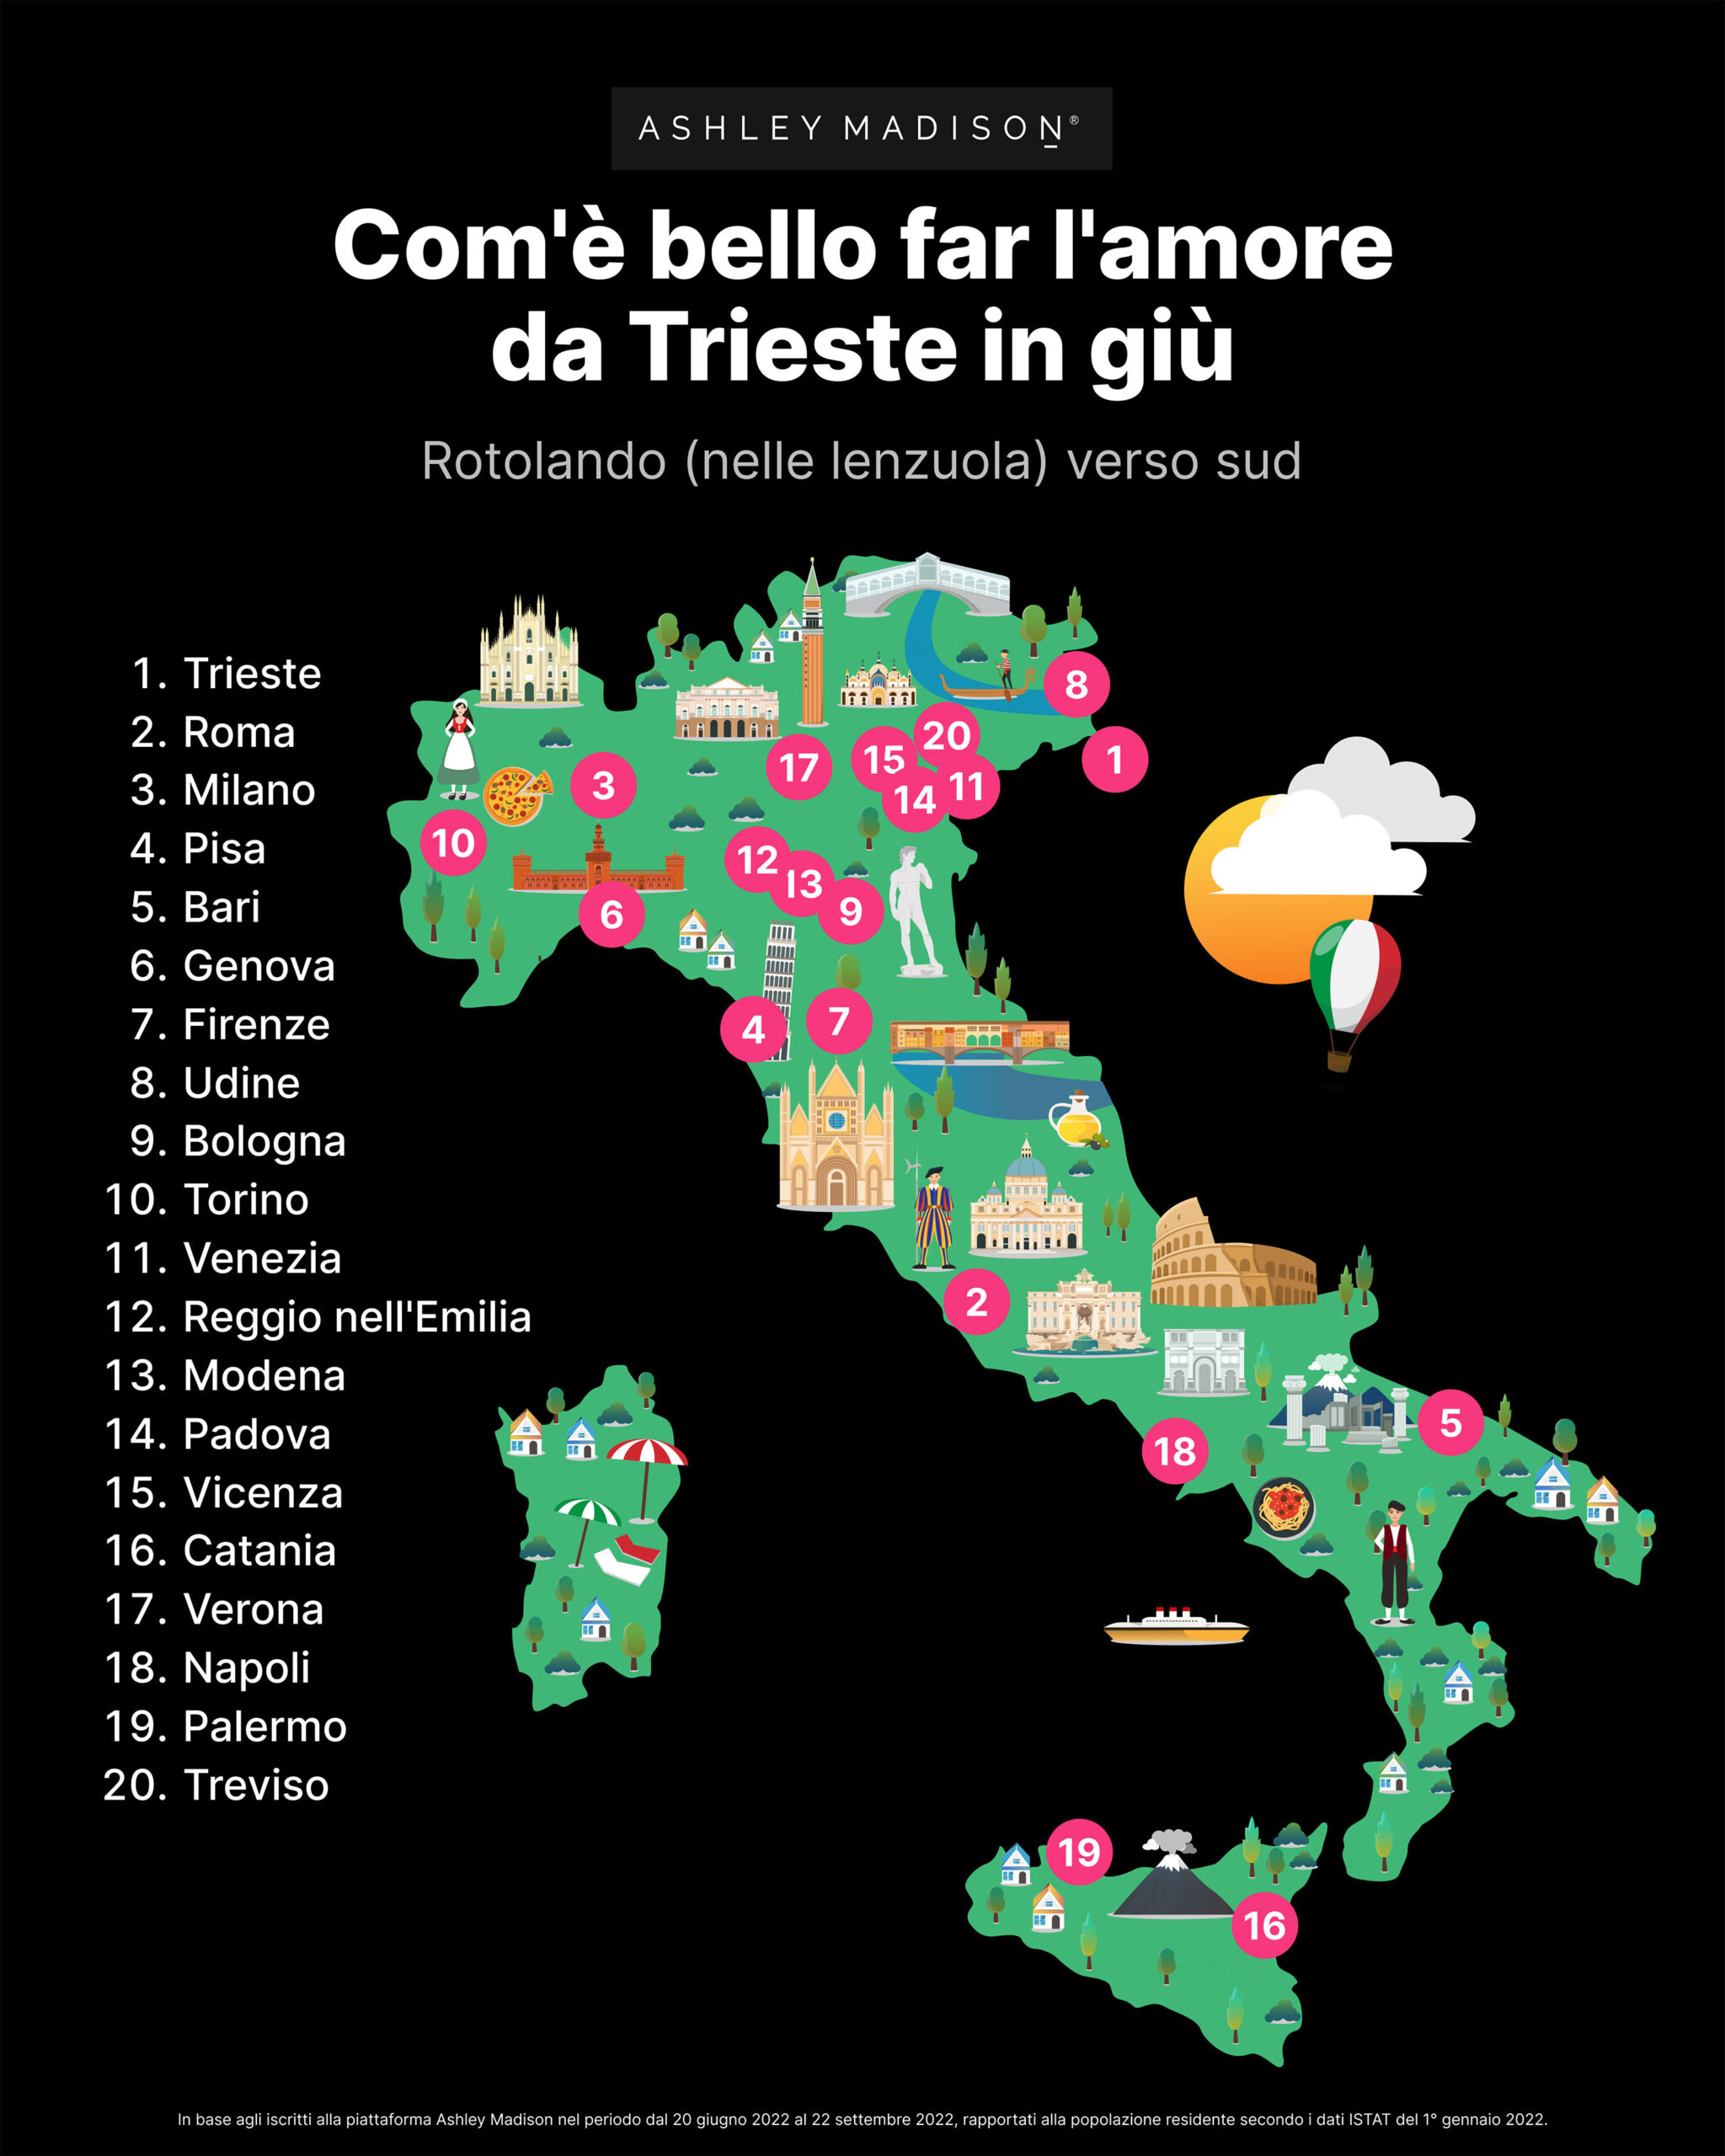 <strong>Toscani e infedeltà: Ashley Madison svela la classifica estiva delle città a più alto tasso di tradimento</strong>